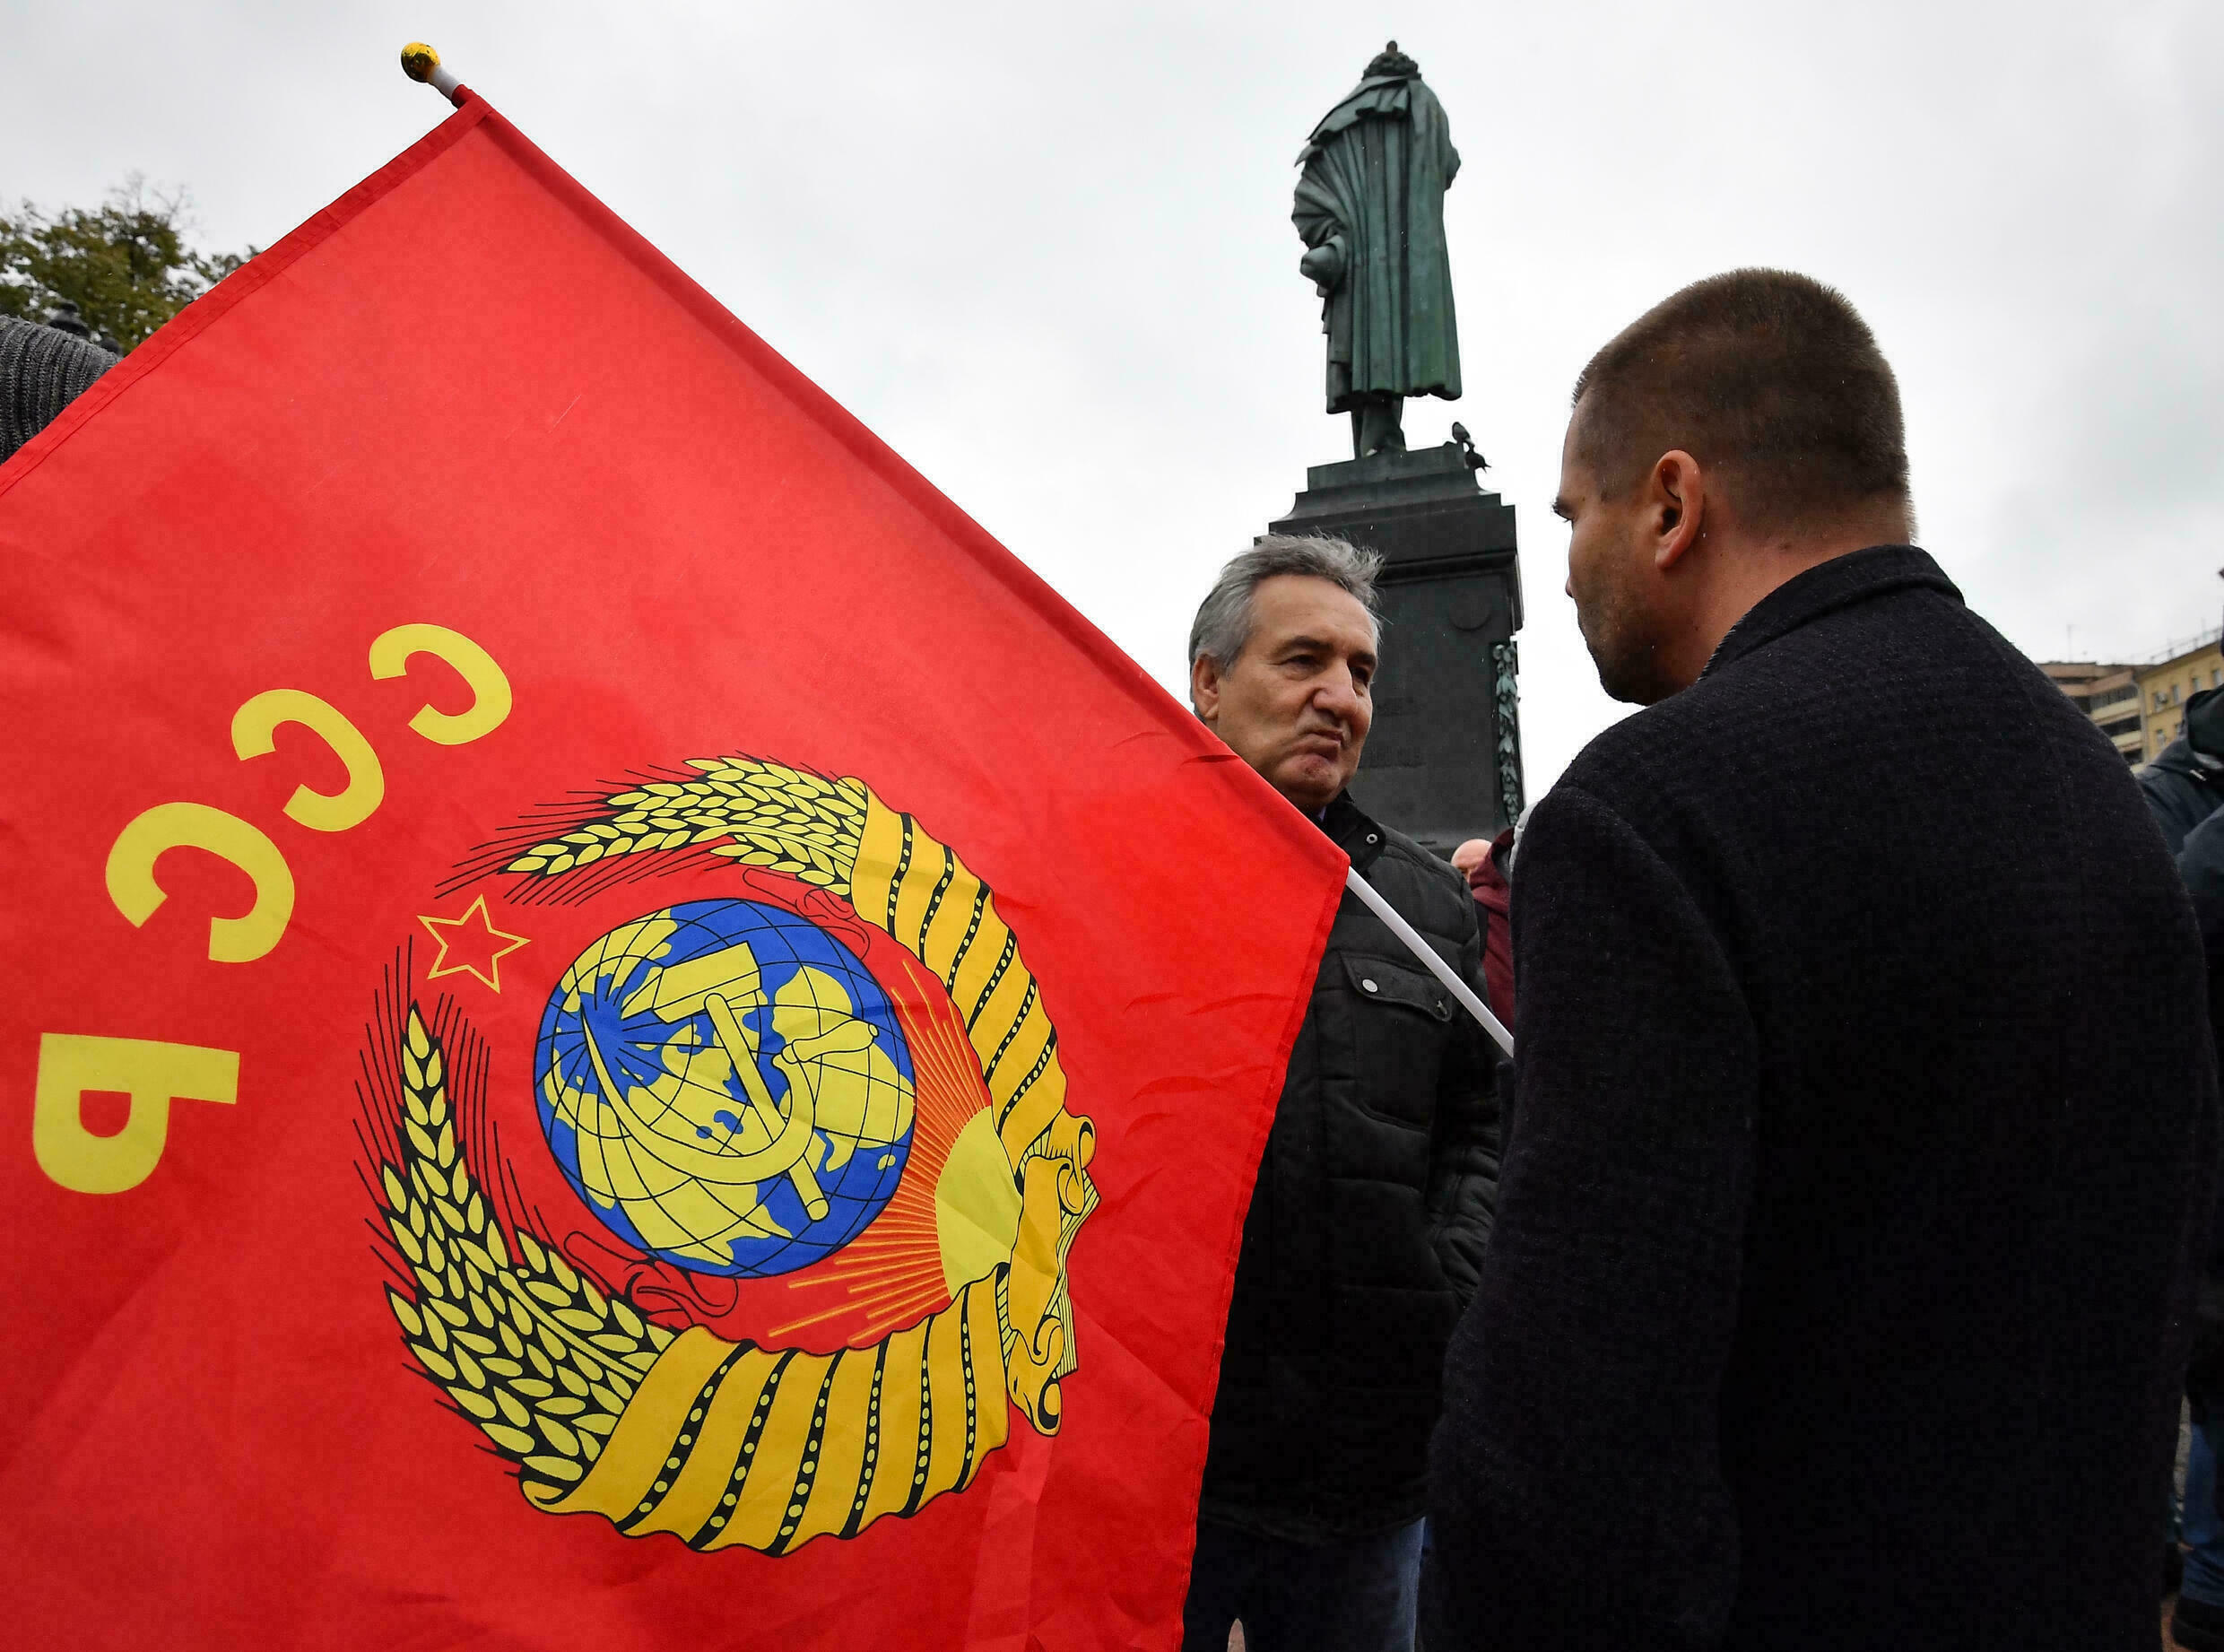 proteste moskova comunist